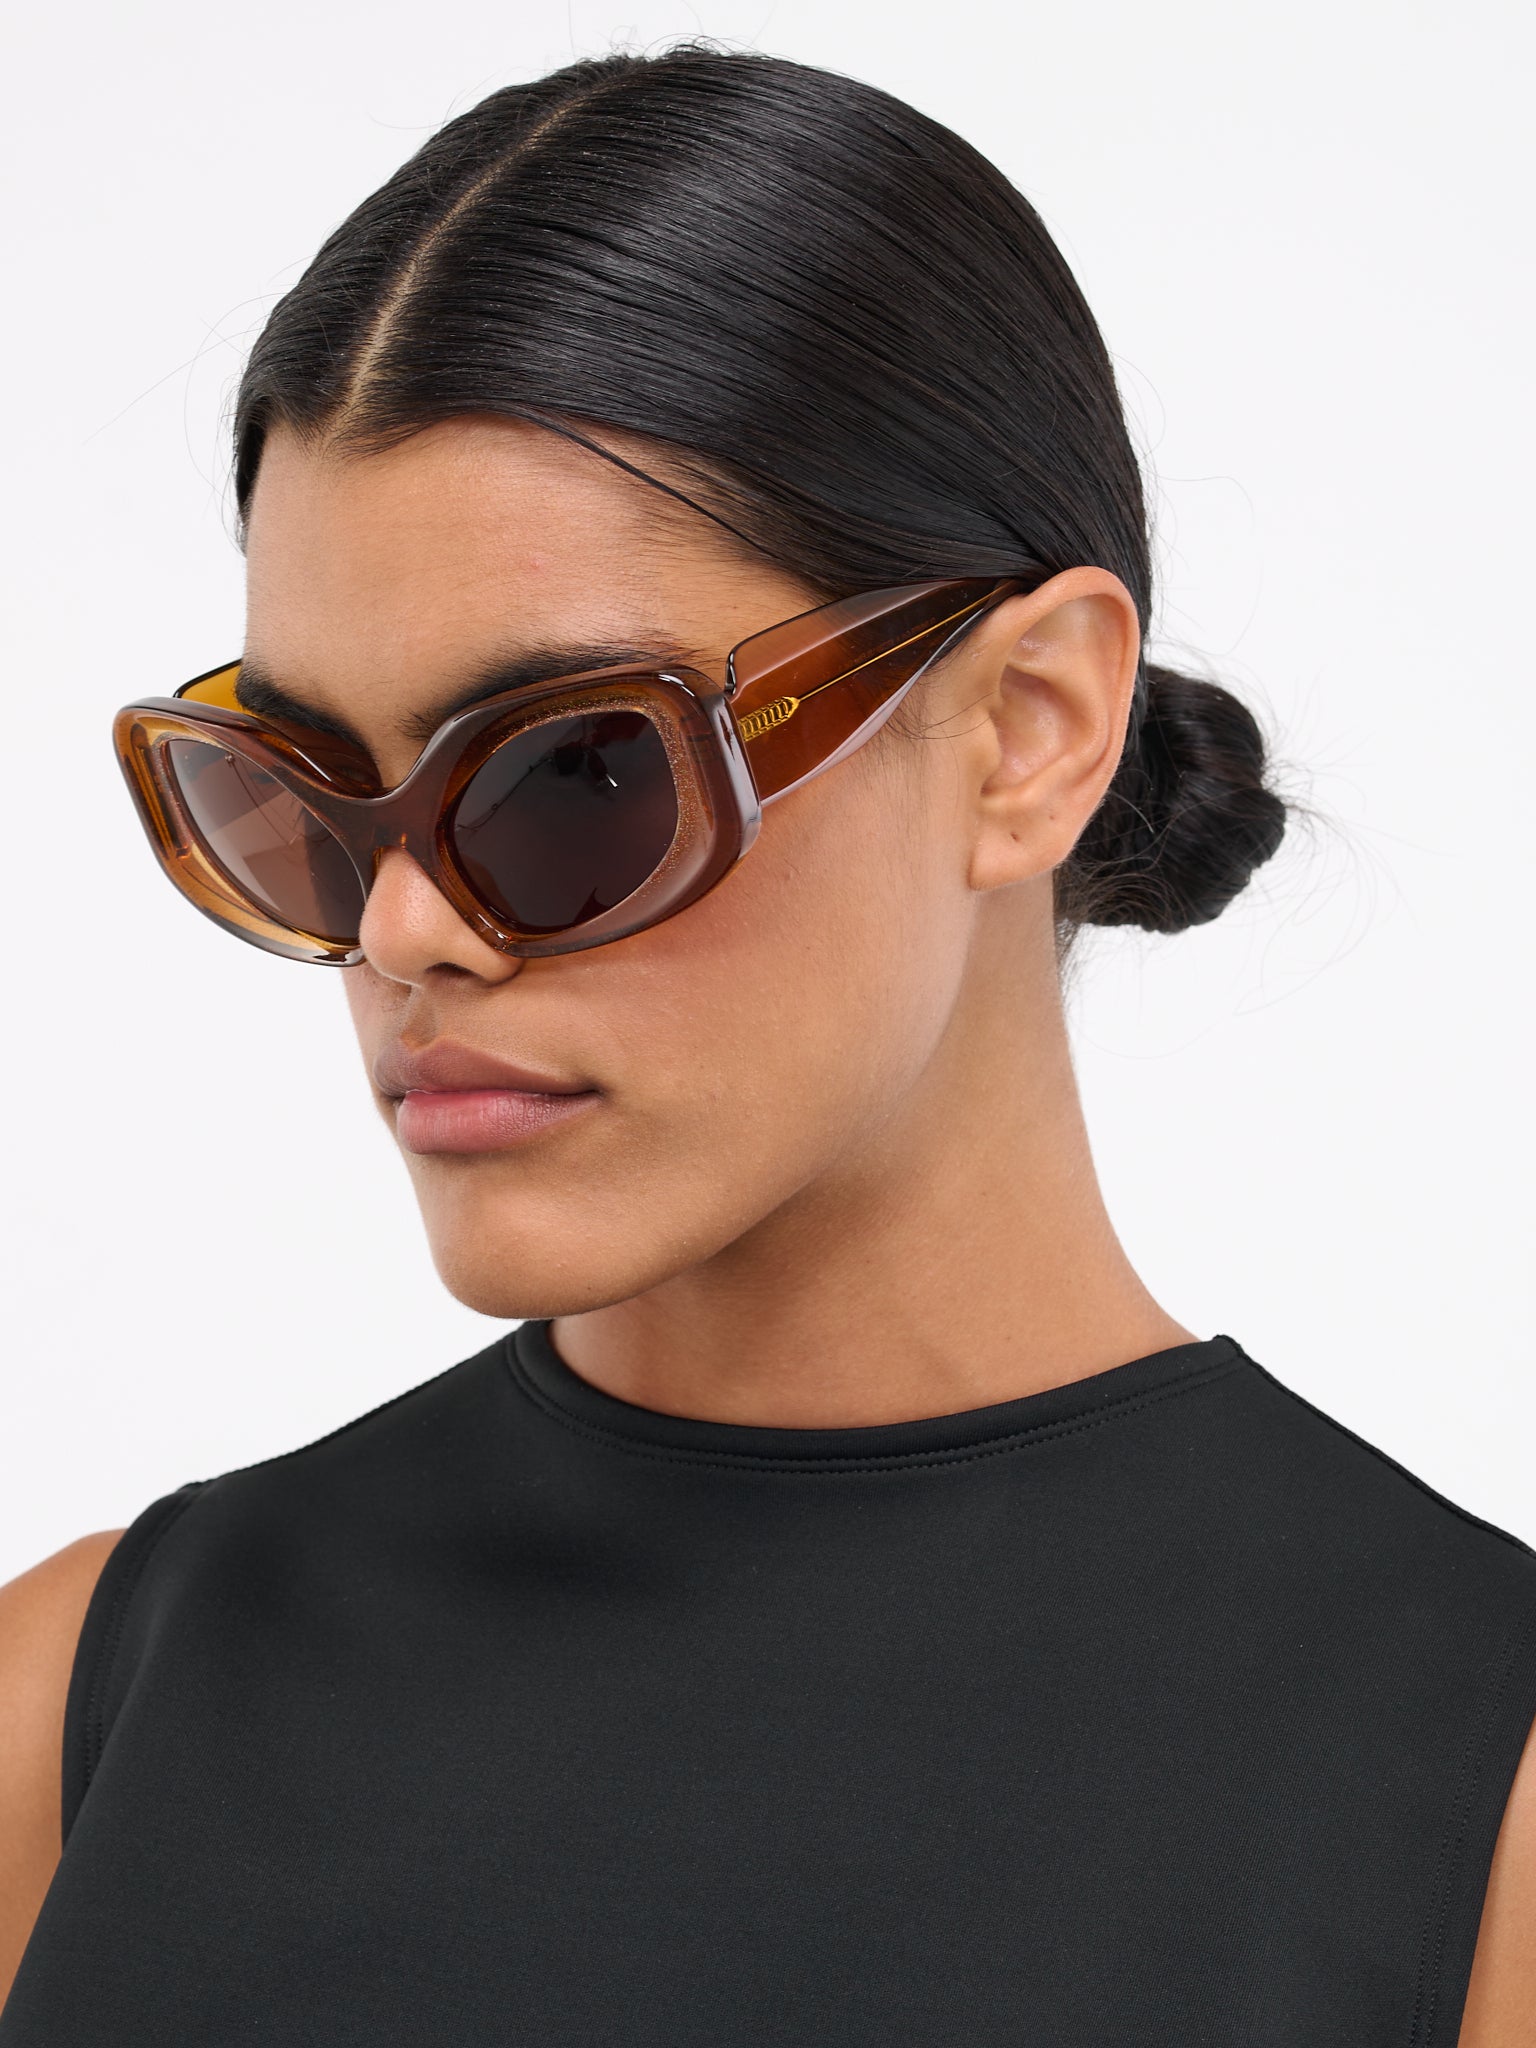 AW Glimmer Sunglasses (GLIMMER-A)